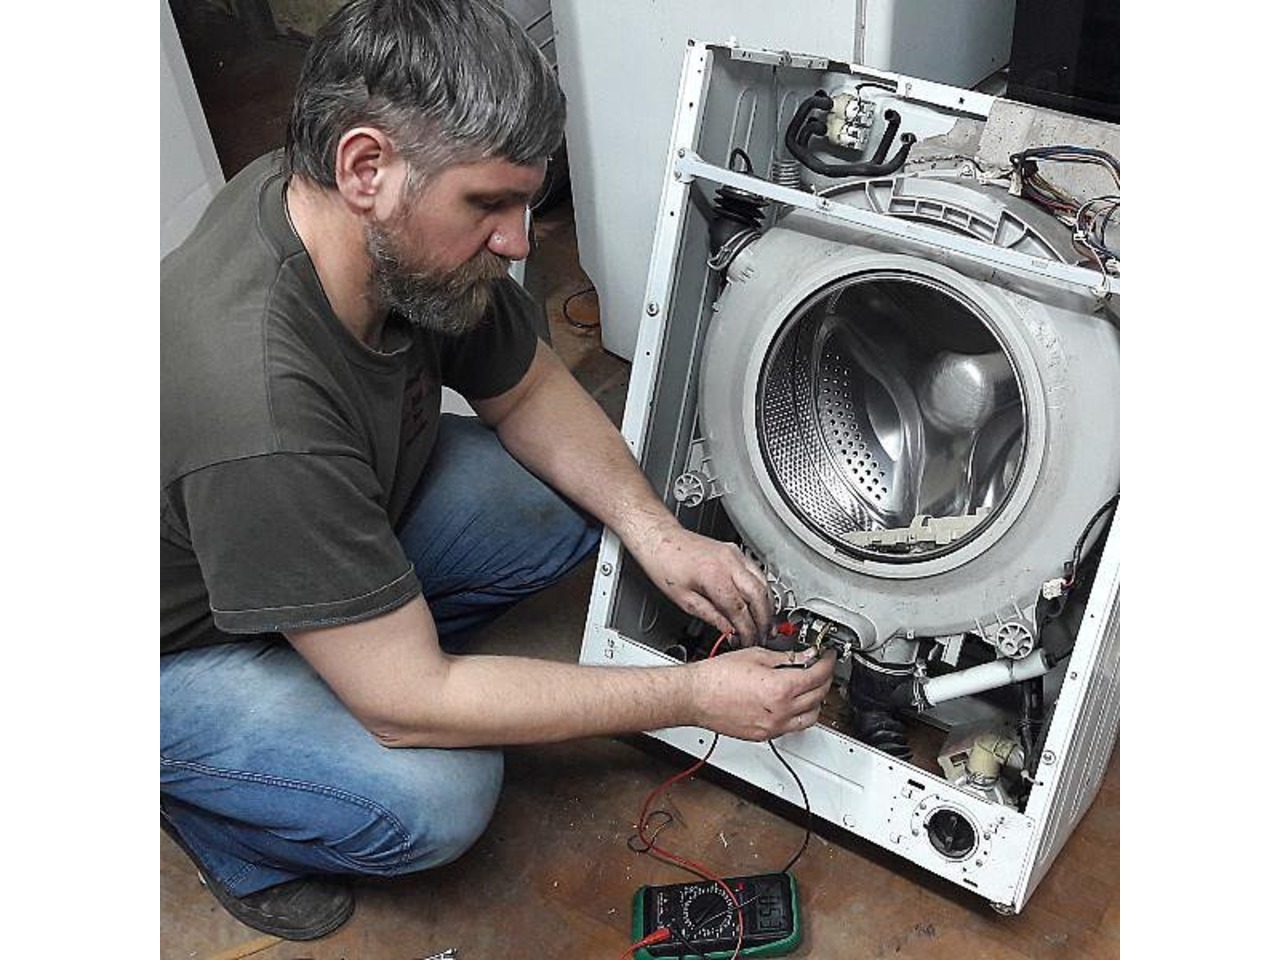 Самара ремонт стиральных машин на дому недорого. Мастер стиральных машин. Мастер по стиральным машинкам. Ремонт стиральных машин. Сломалась стиральная машина.